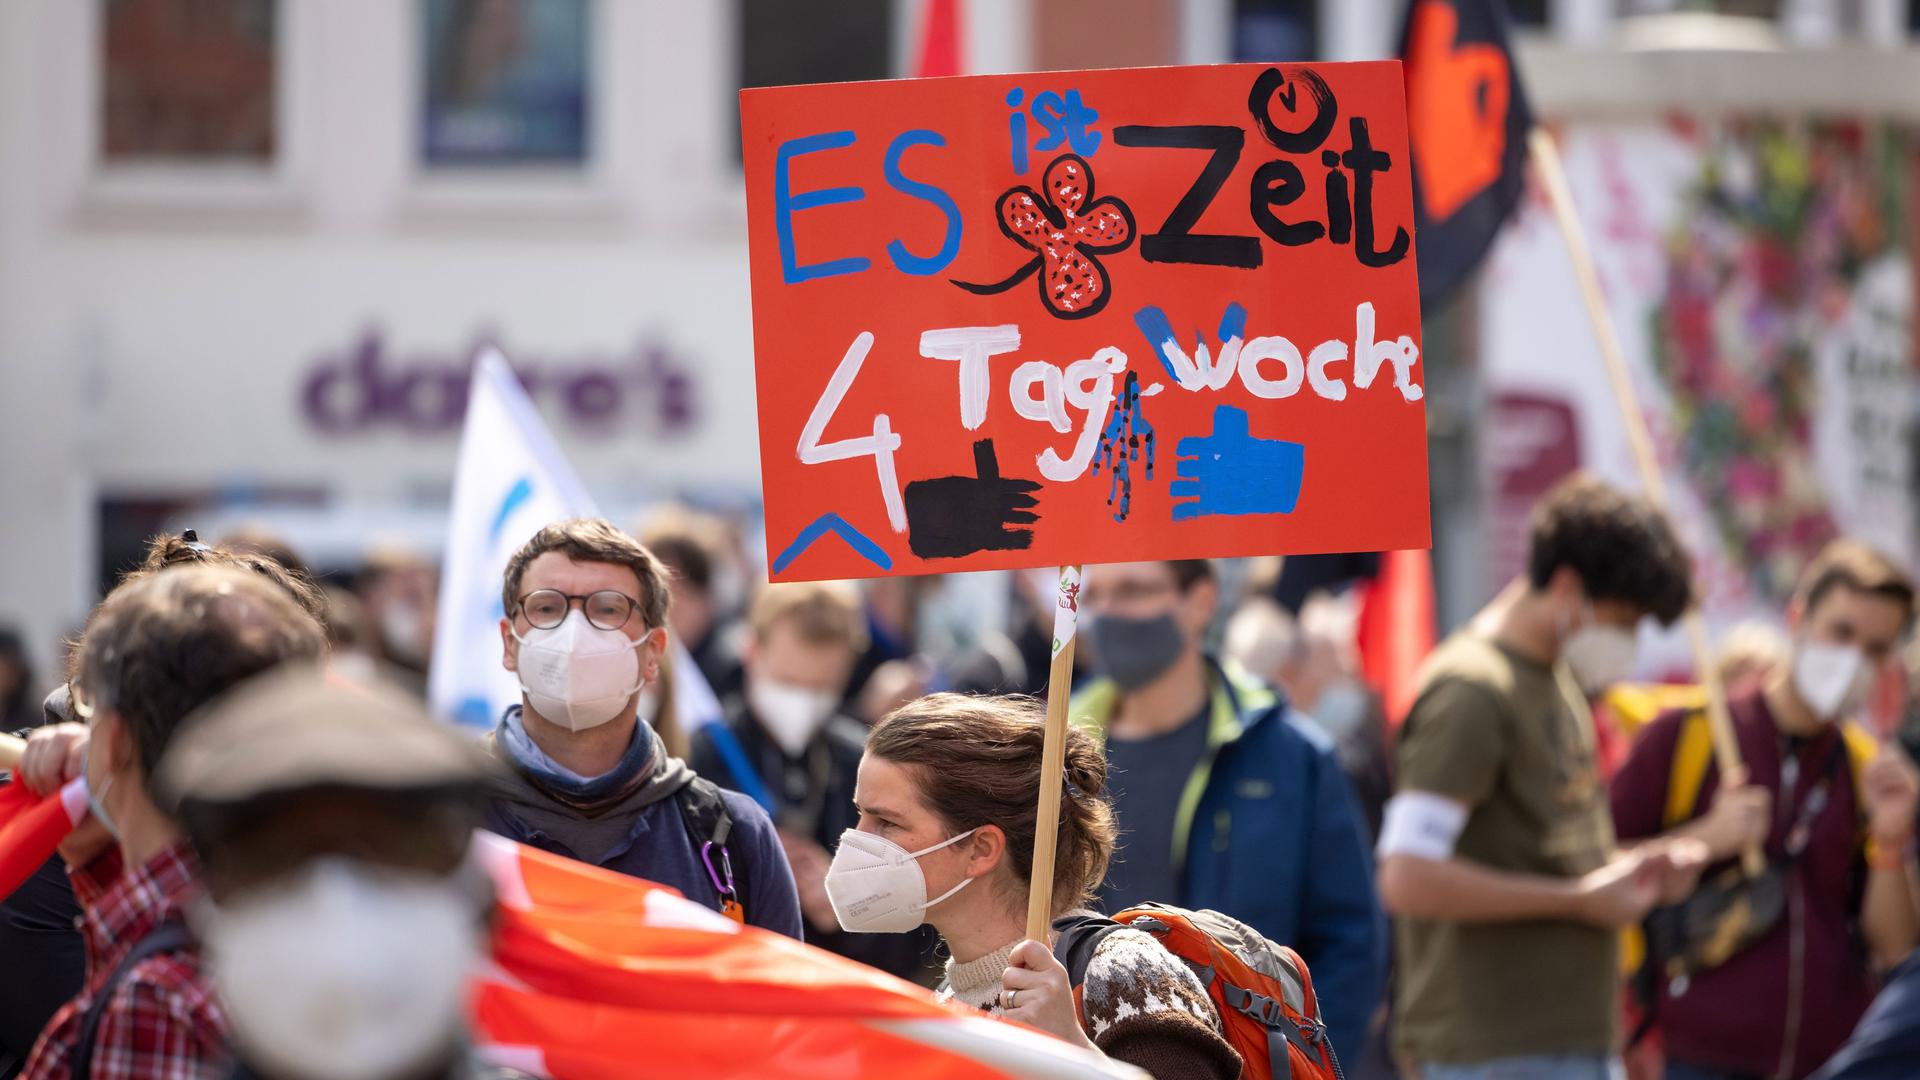 Eine Demonstrantin fordert bei einer DGB-Kundgebung 2021 Erfurt zum 1. Mai auf ihrem Plakat die 4-Tage-Woche.